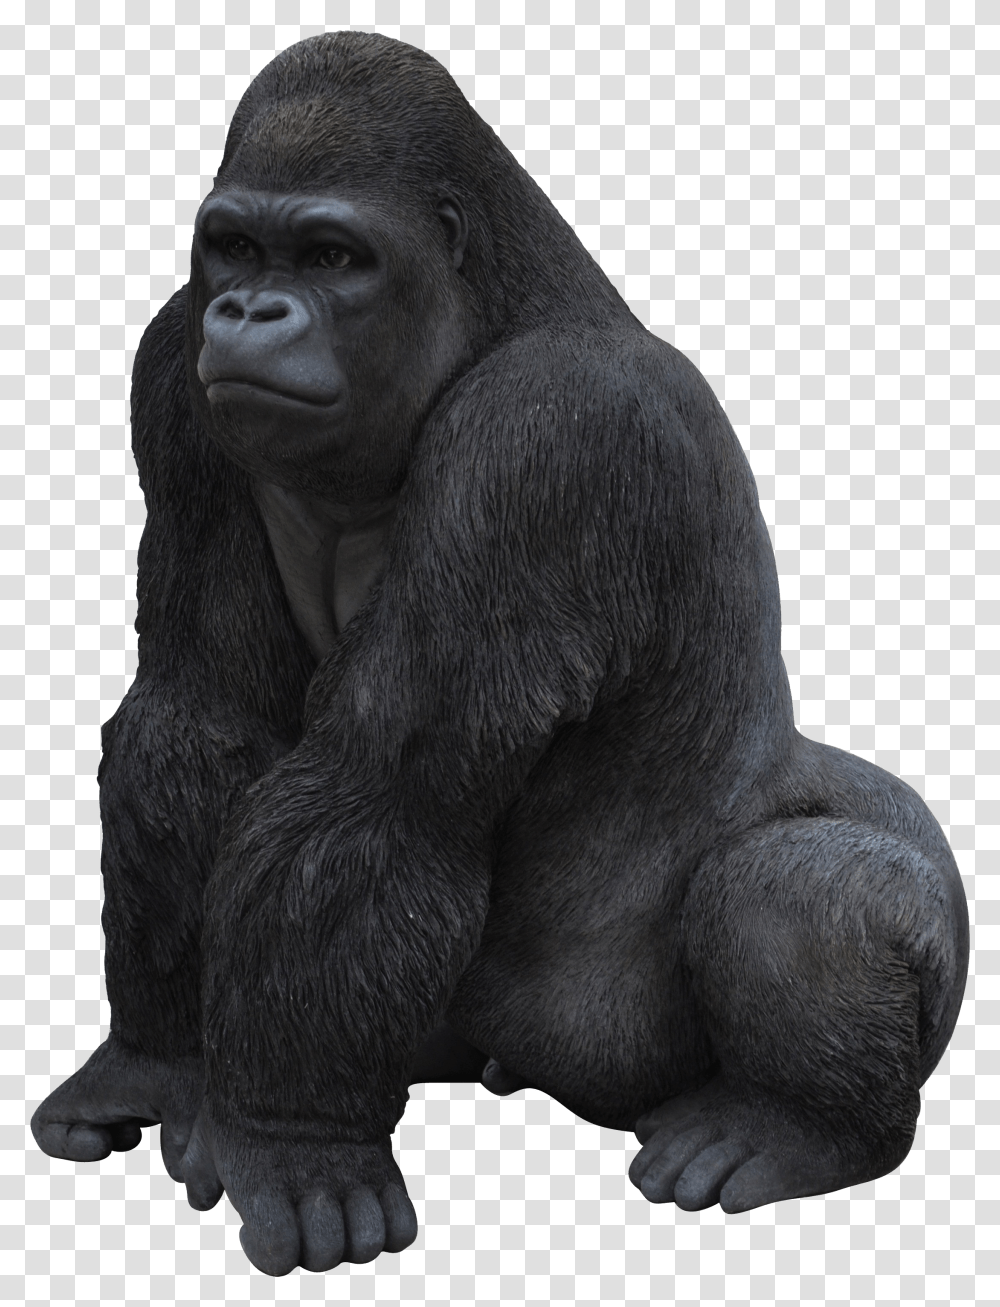 Gorilla Gorilla Transparent Png